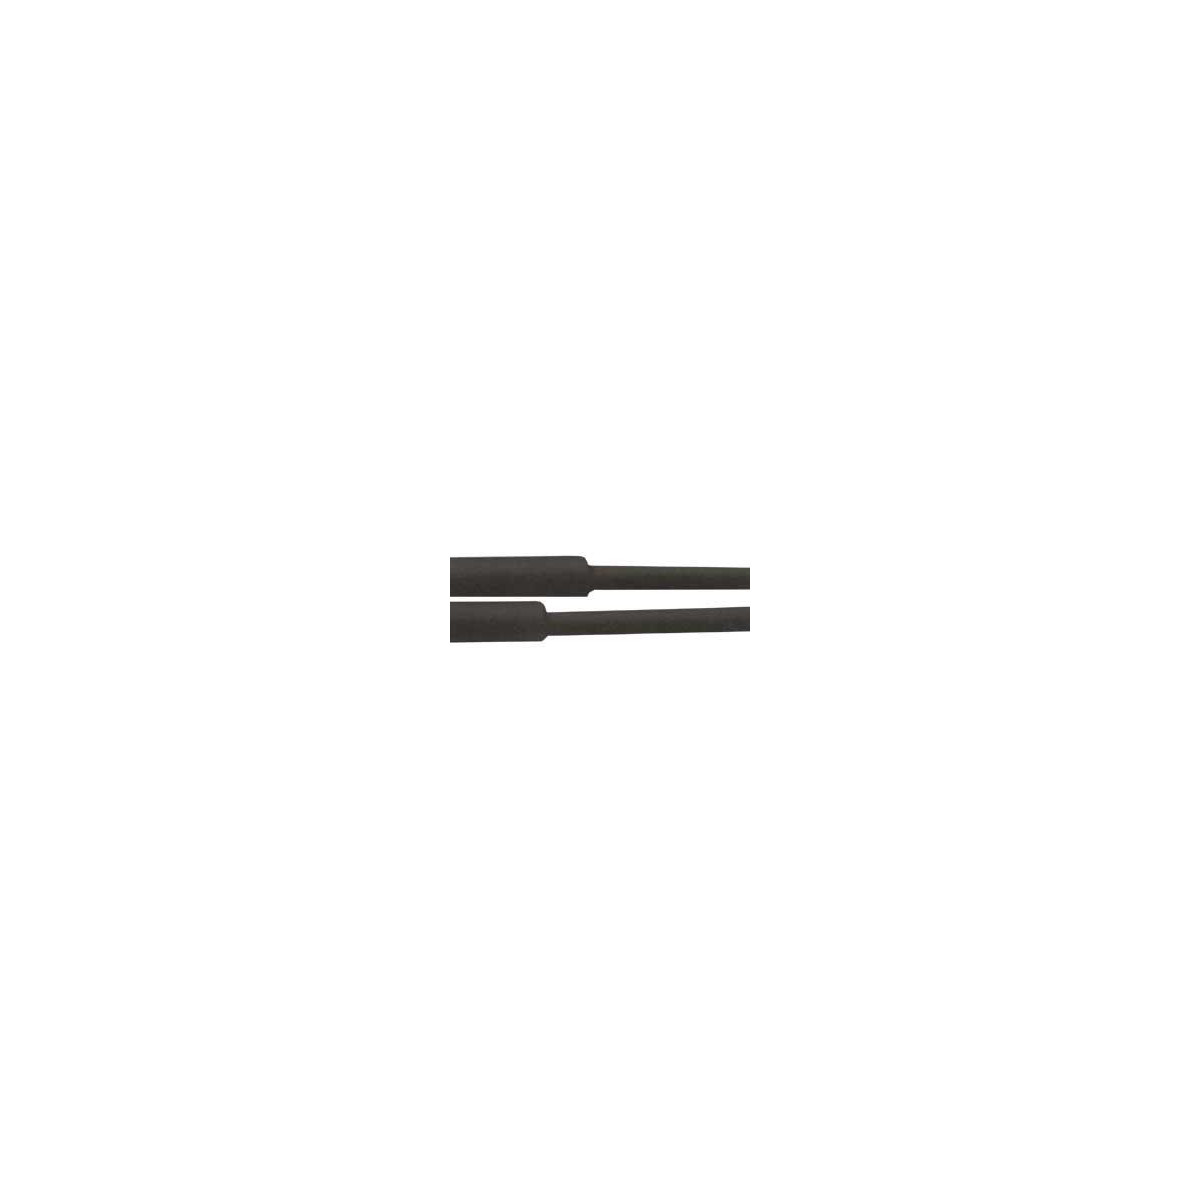 Viac oBužírka smršťovací - 120.0 / 60.0mm černá